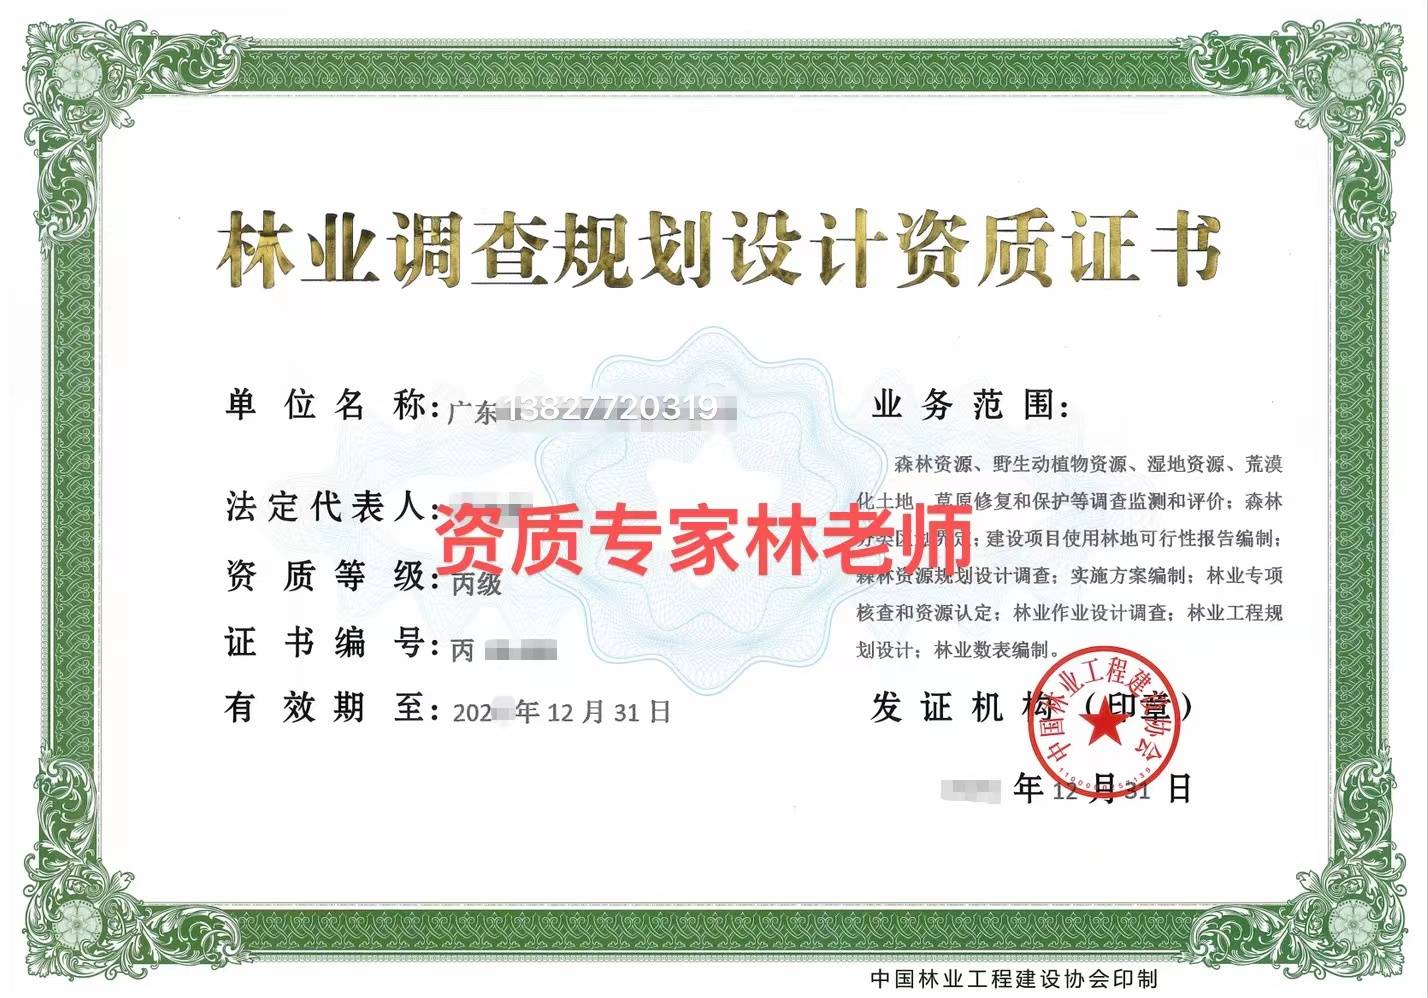 了解《中国林业工程建设协会》最新发布中国林业调查规划资质标准要求